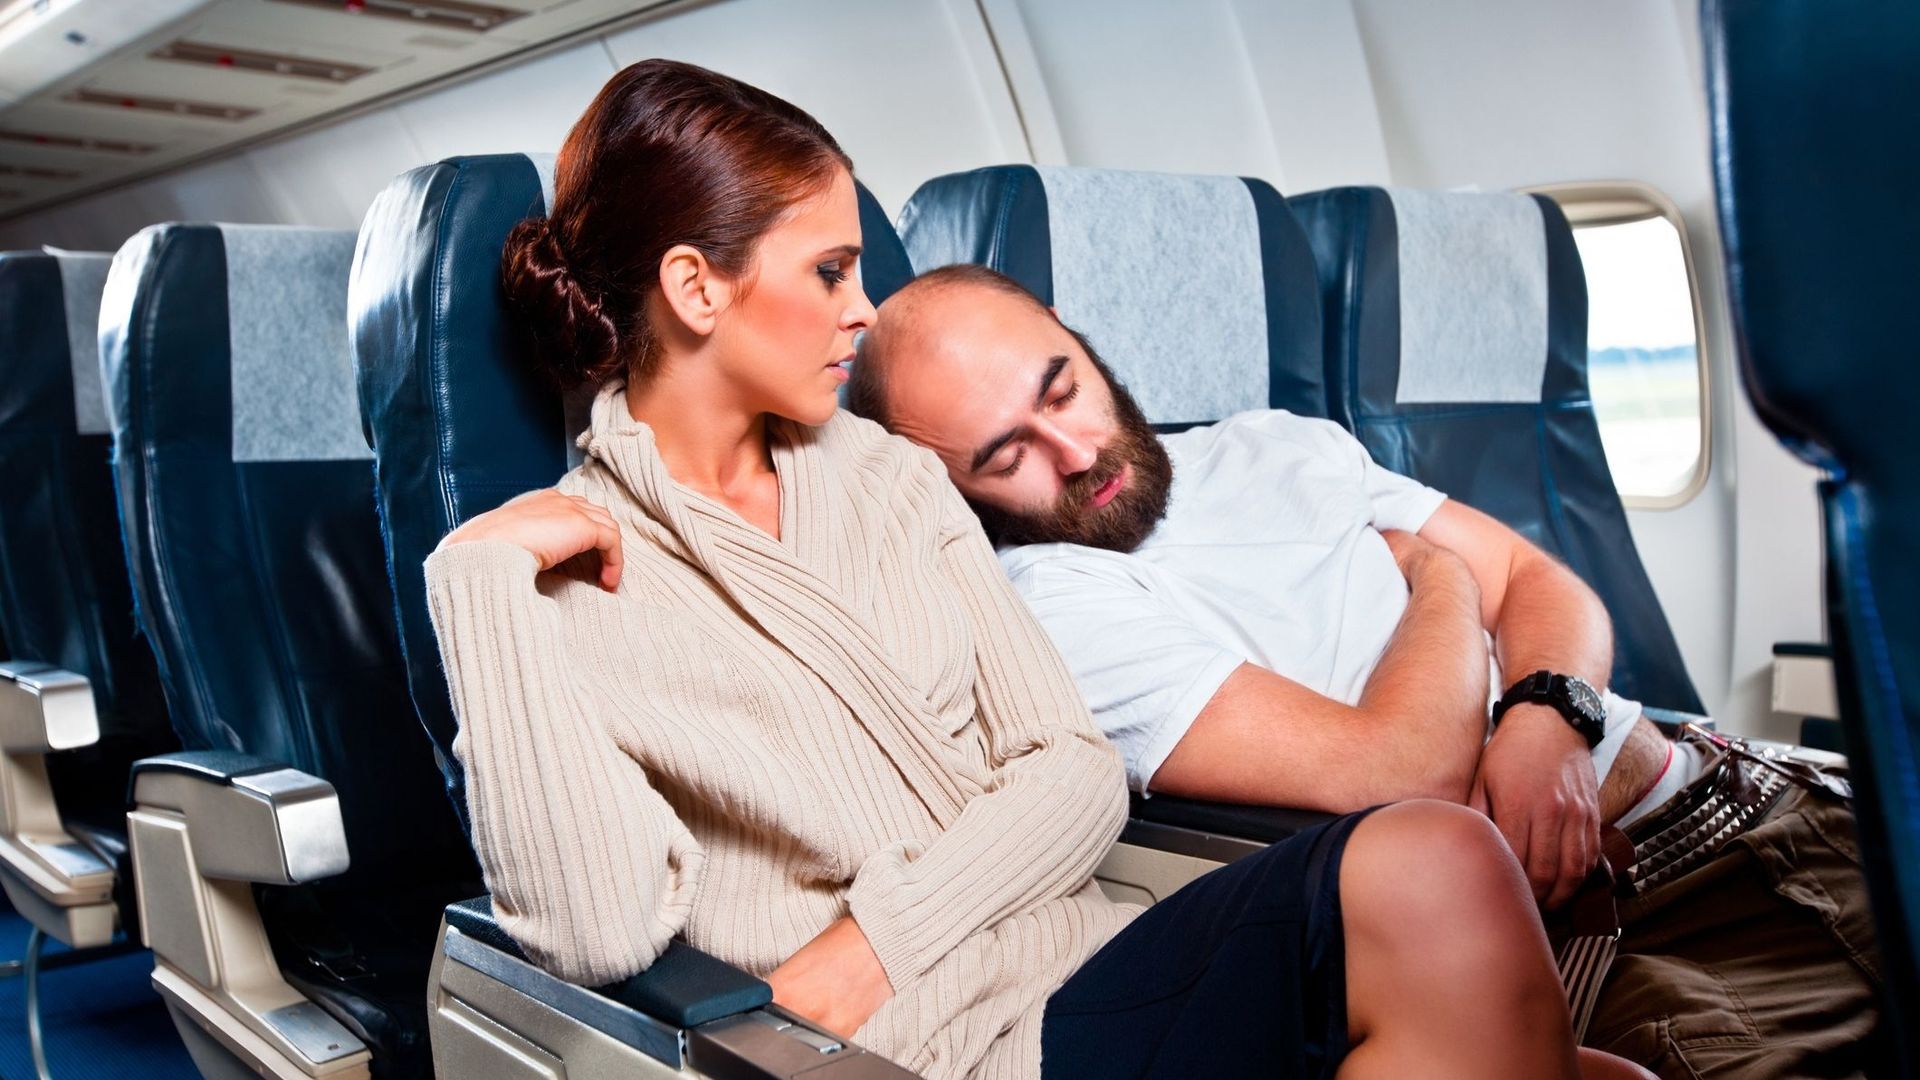 Sextoy, vol, porno : voici les pires situations lors d'un voyage en avion.